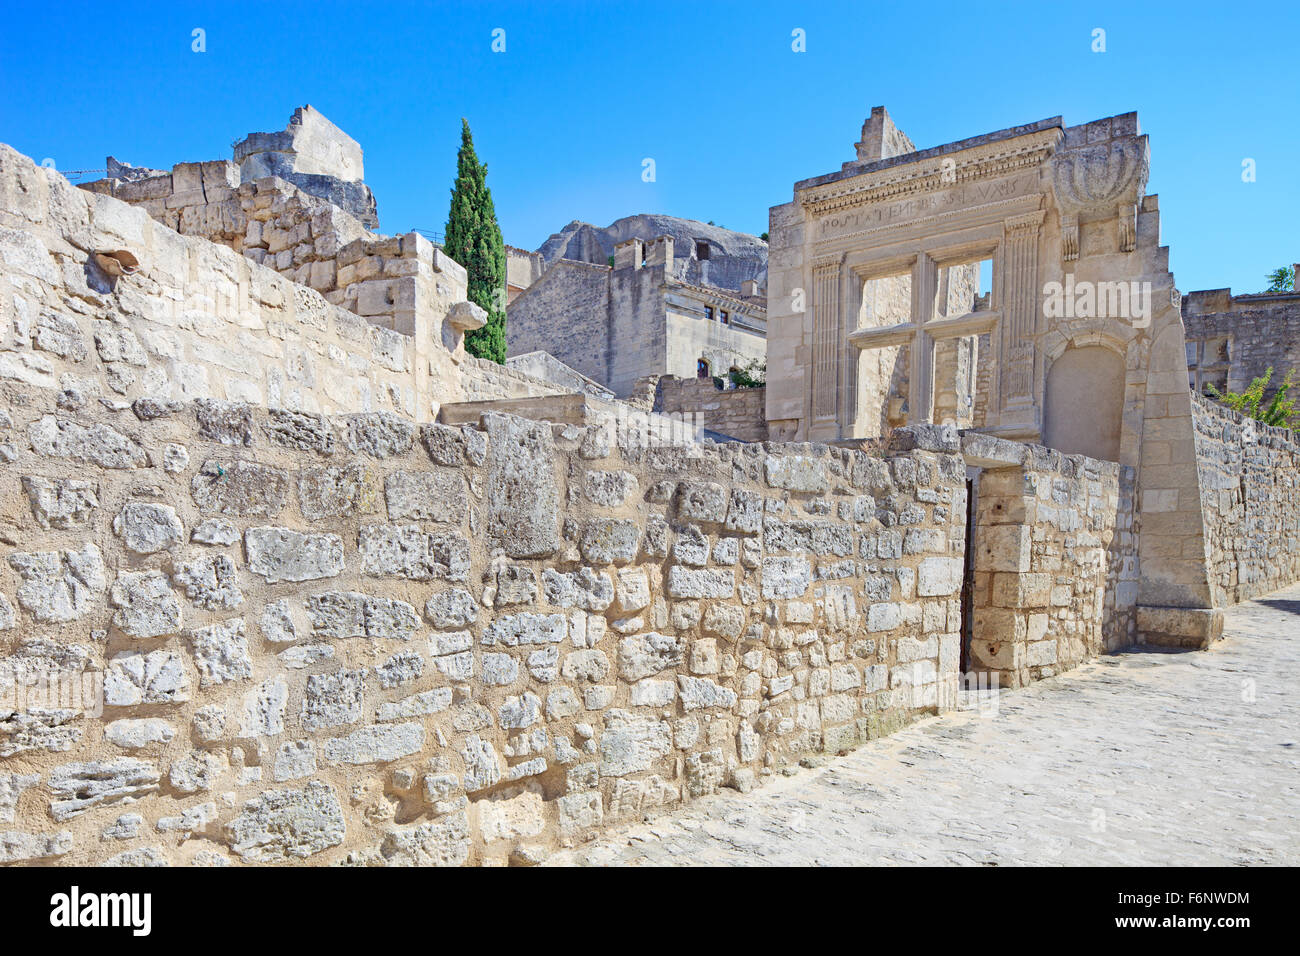 Les Baux de Provence village ancien, vieux mur de pierre et les ruines d'une rue. La France, l'Europe. Banque D'Images